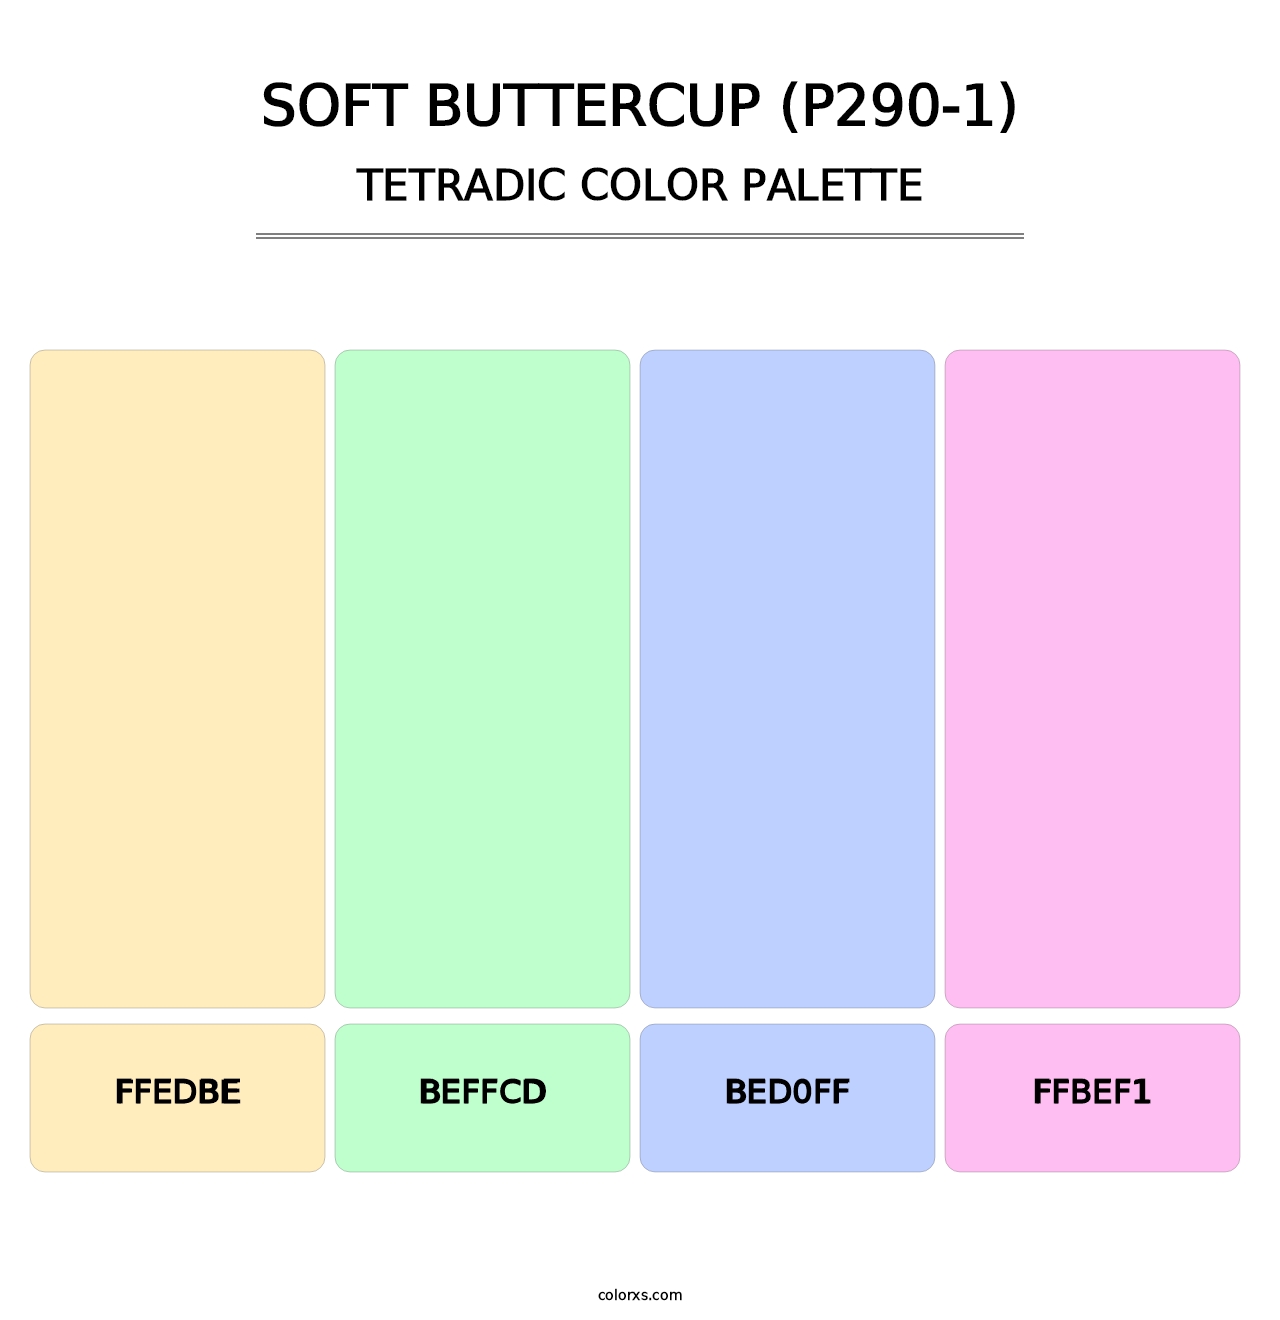 Soft Buttercup (P290-1) - Tetradic Color Palette